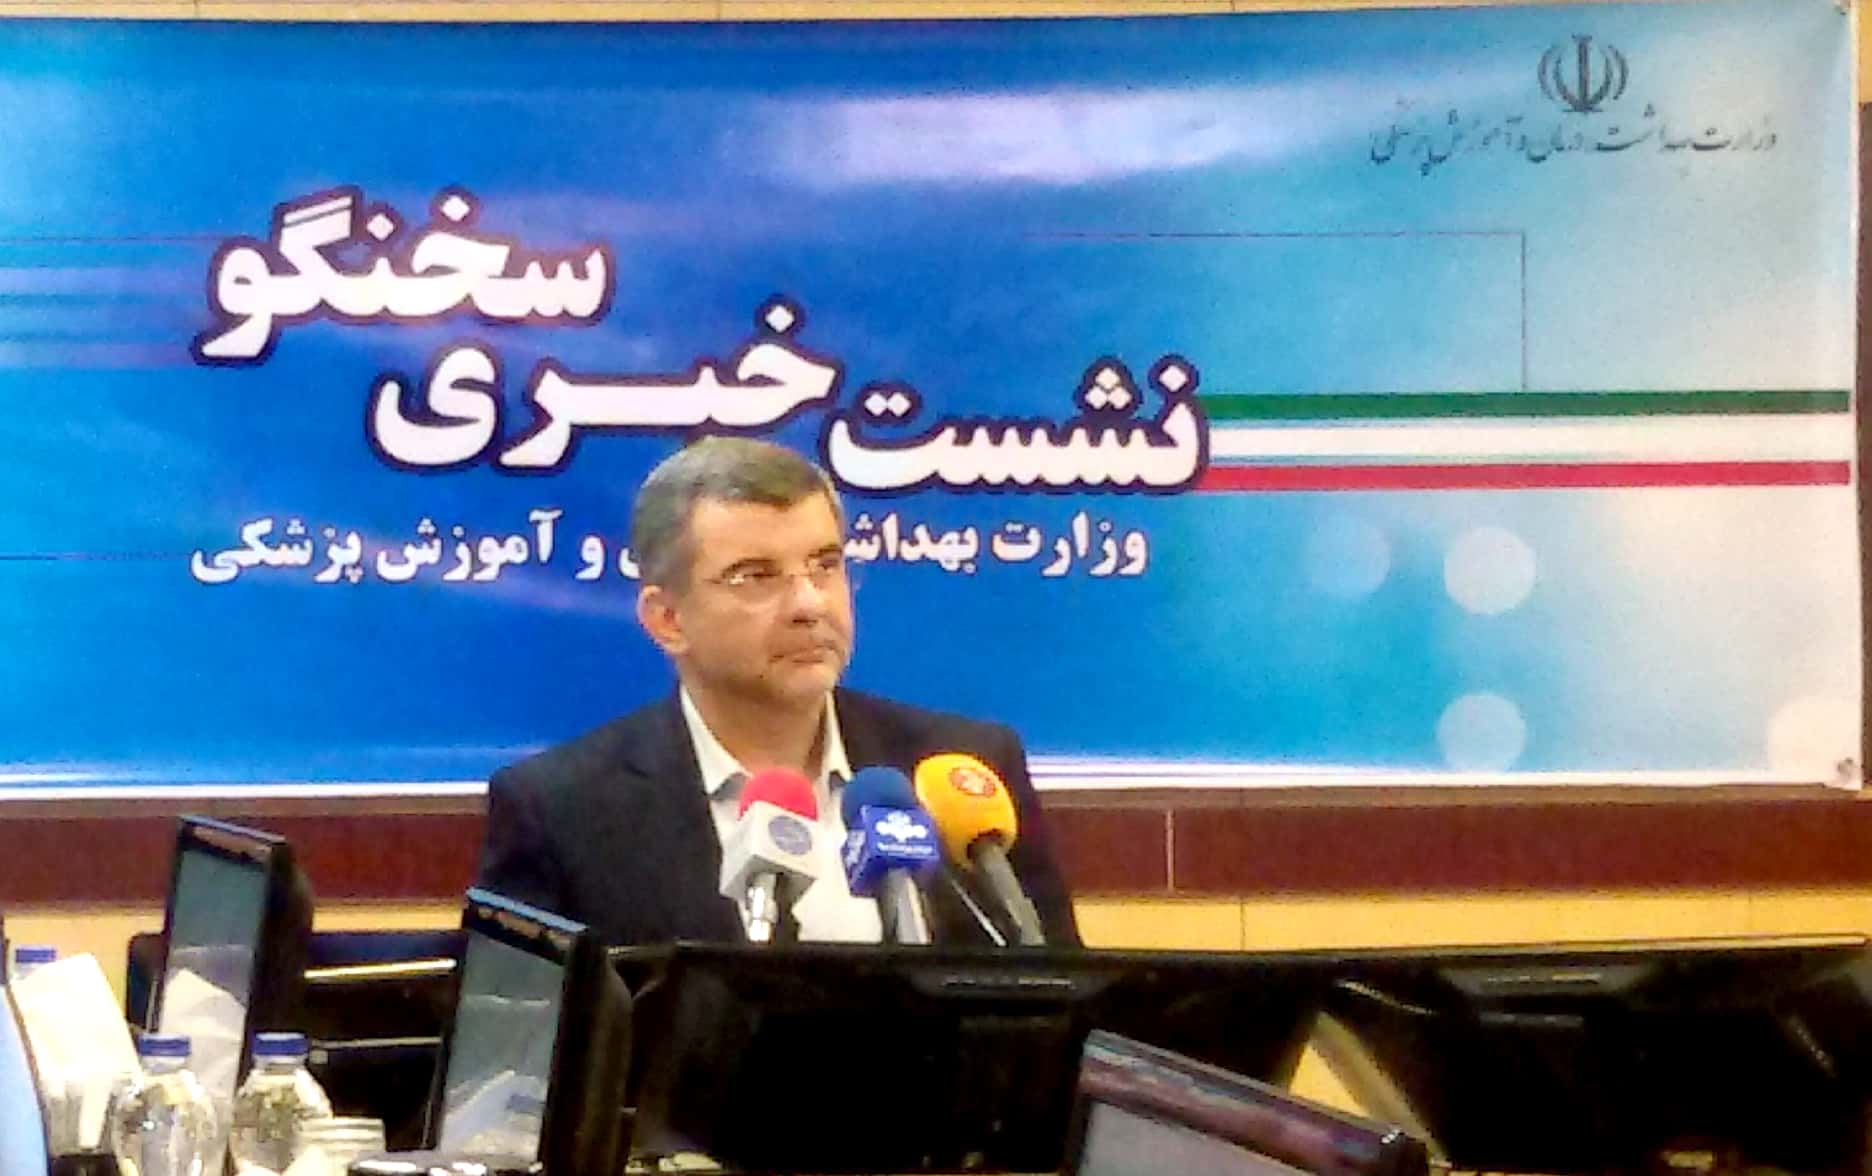 سهم 67 درصدی مواد اولیه و موثر ایران در تولید دارو